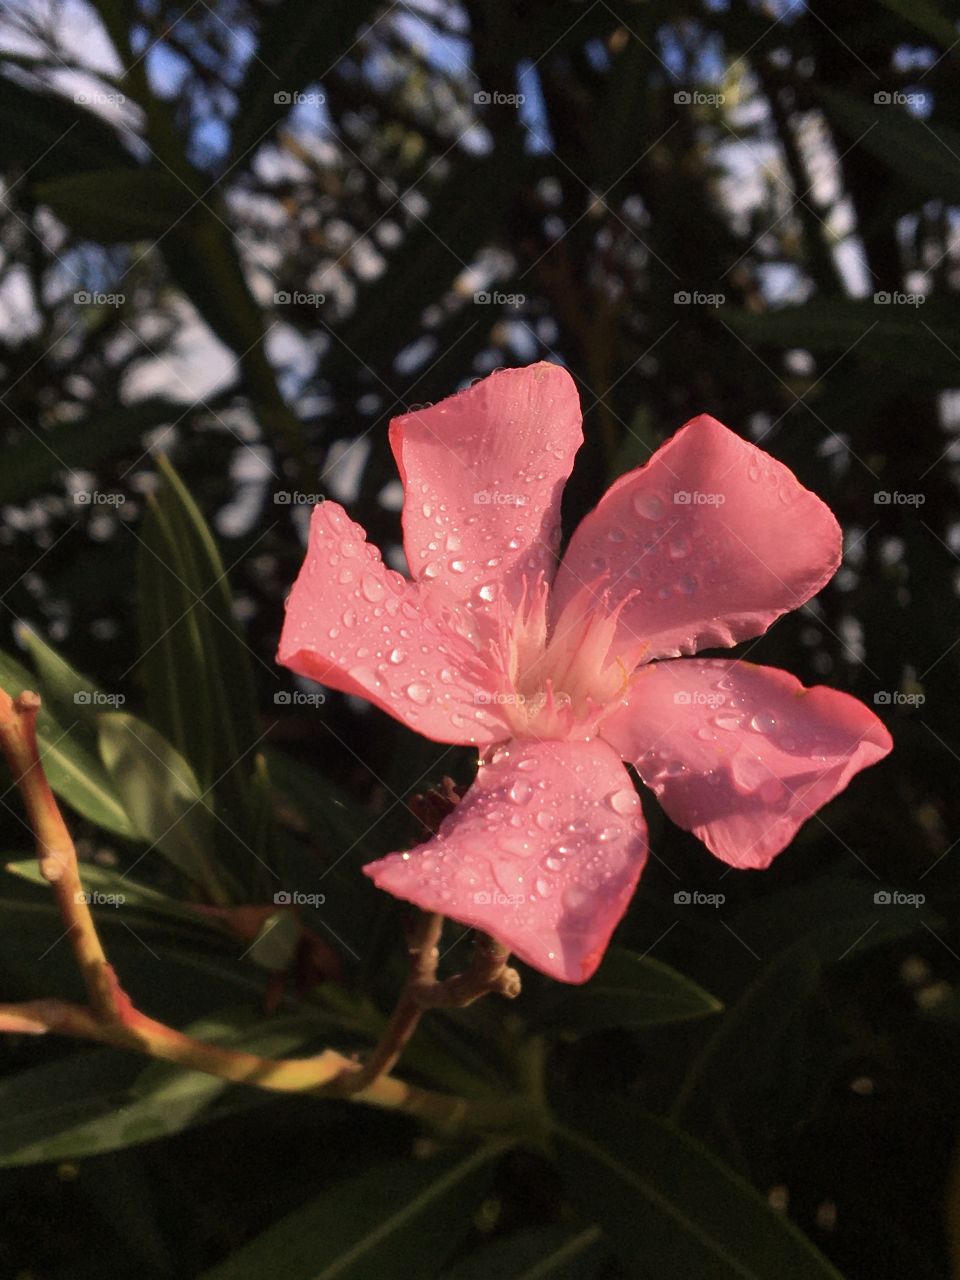 Single oleander flower in sunshine after rain 